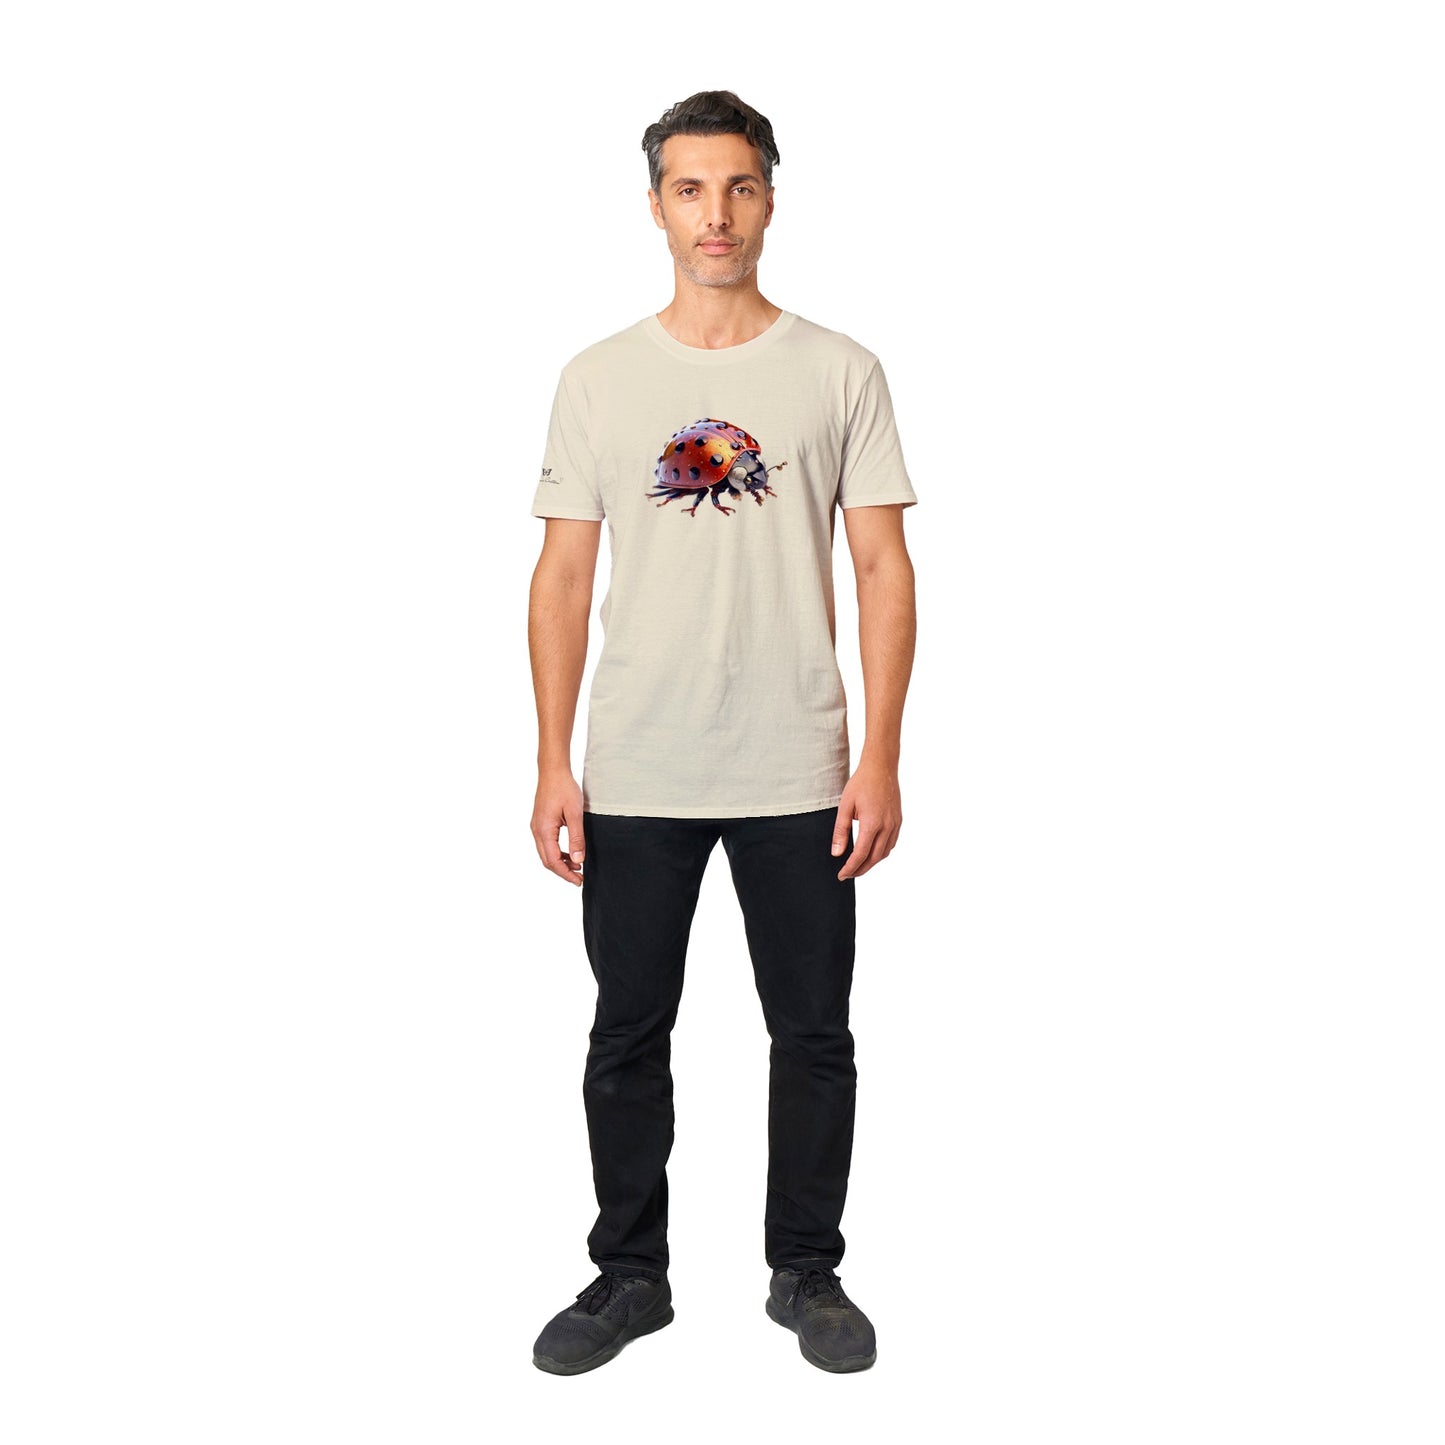 Ladybug - Unisex Crewneck T-shirt